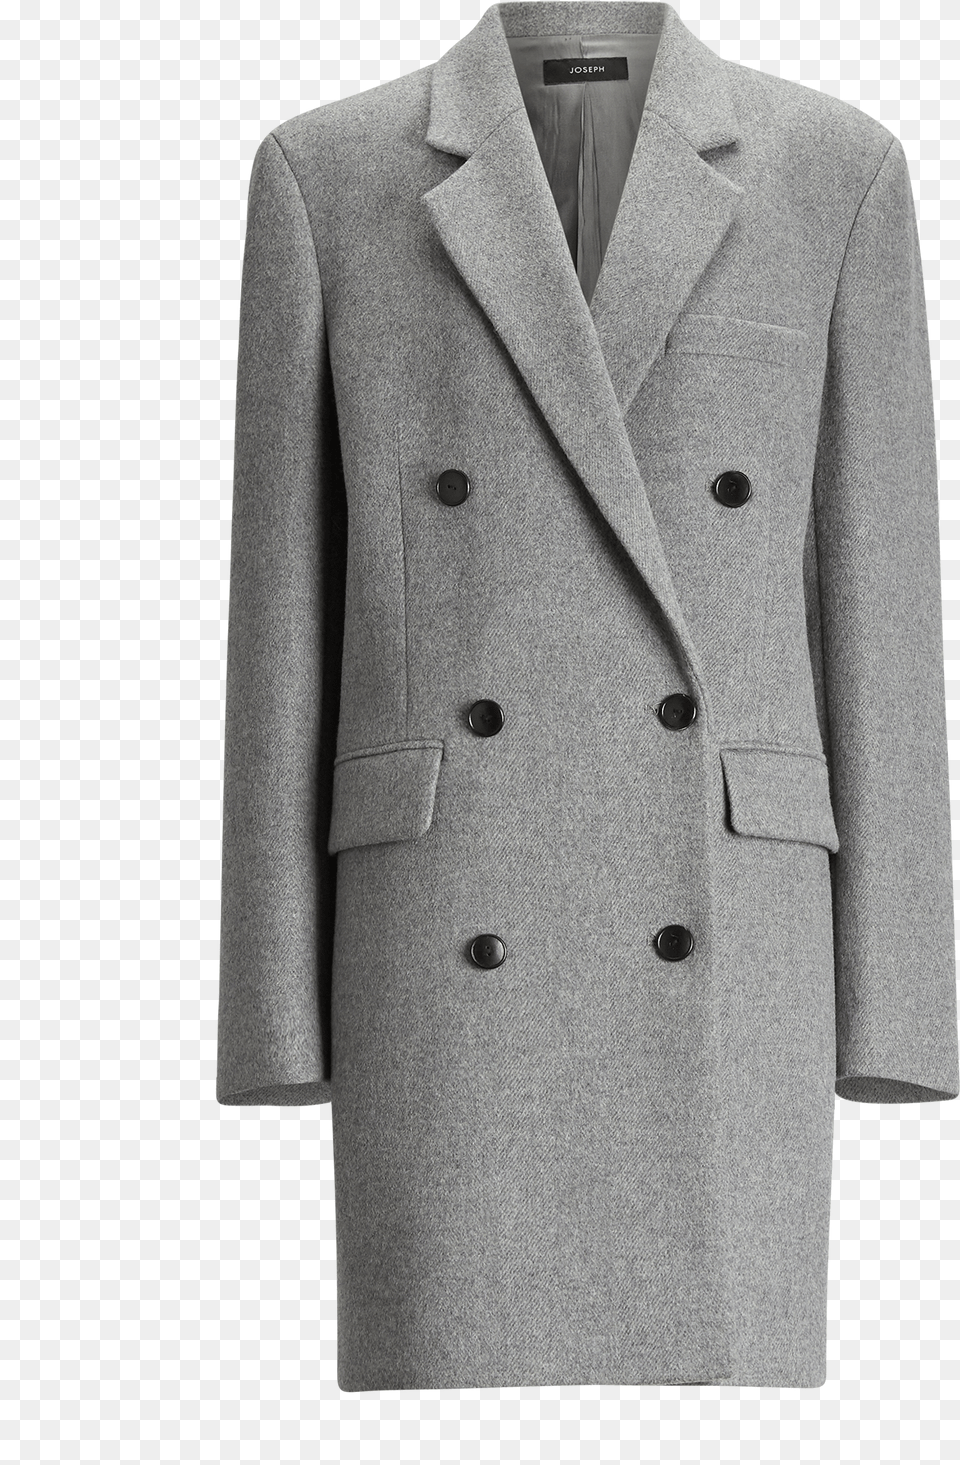 Joseph Elkins Giant Chevron Coat In Grey Coat Chevron, Clothing, Overcoat Png